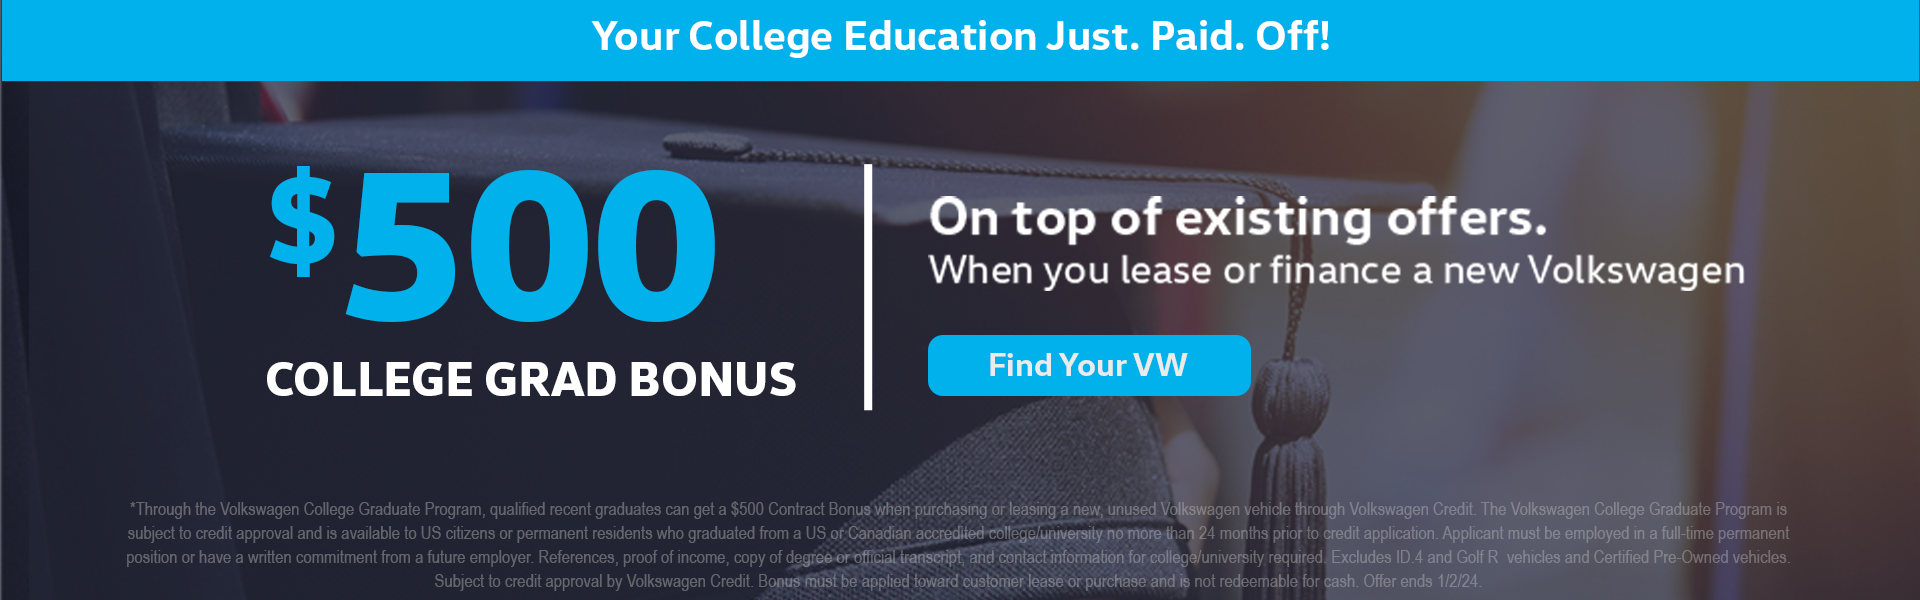 VW College Grad Offer